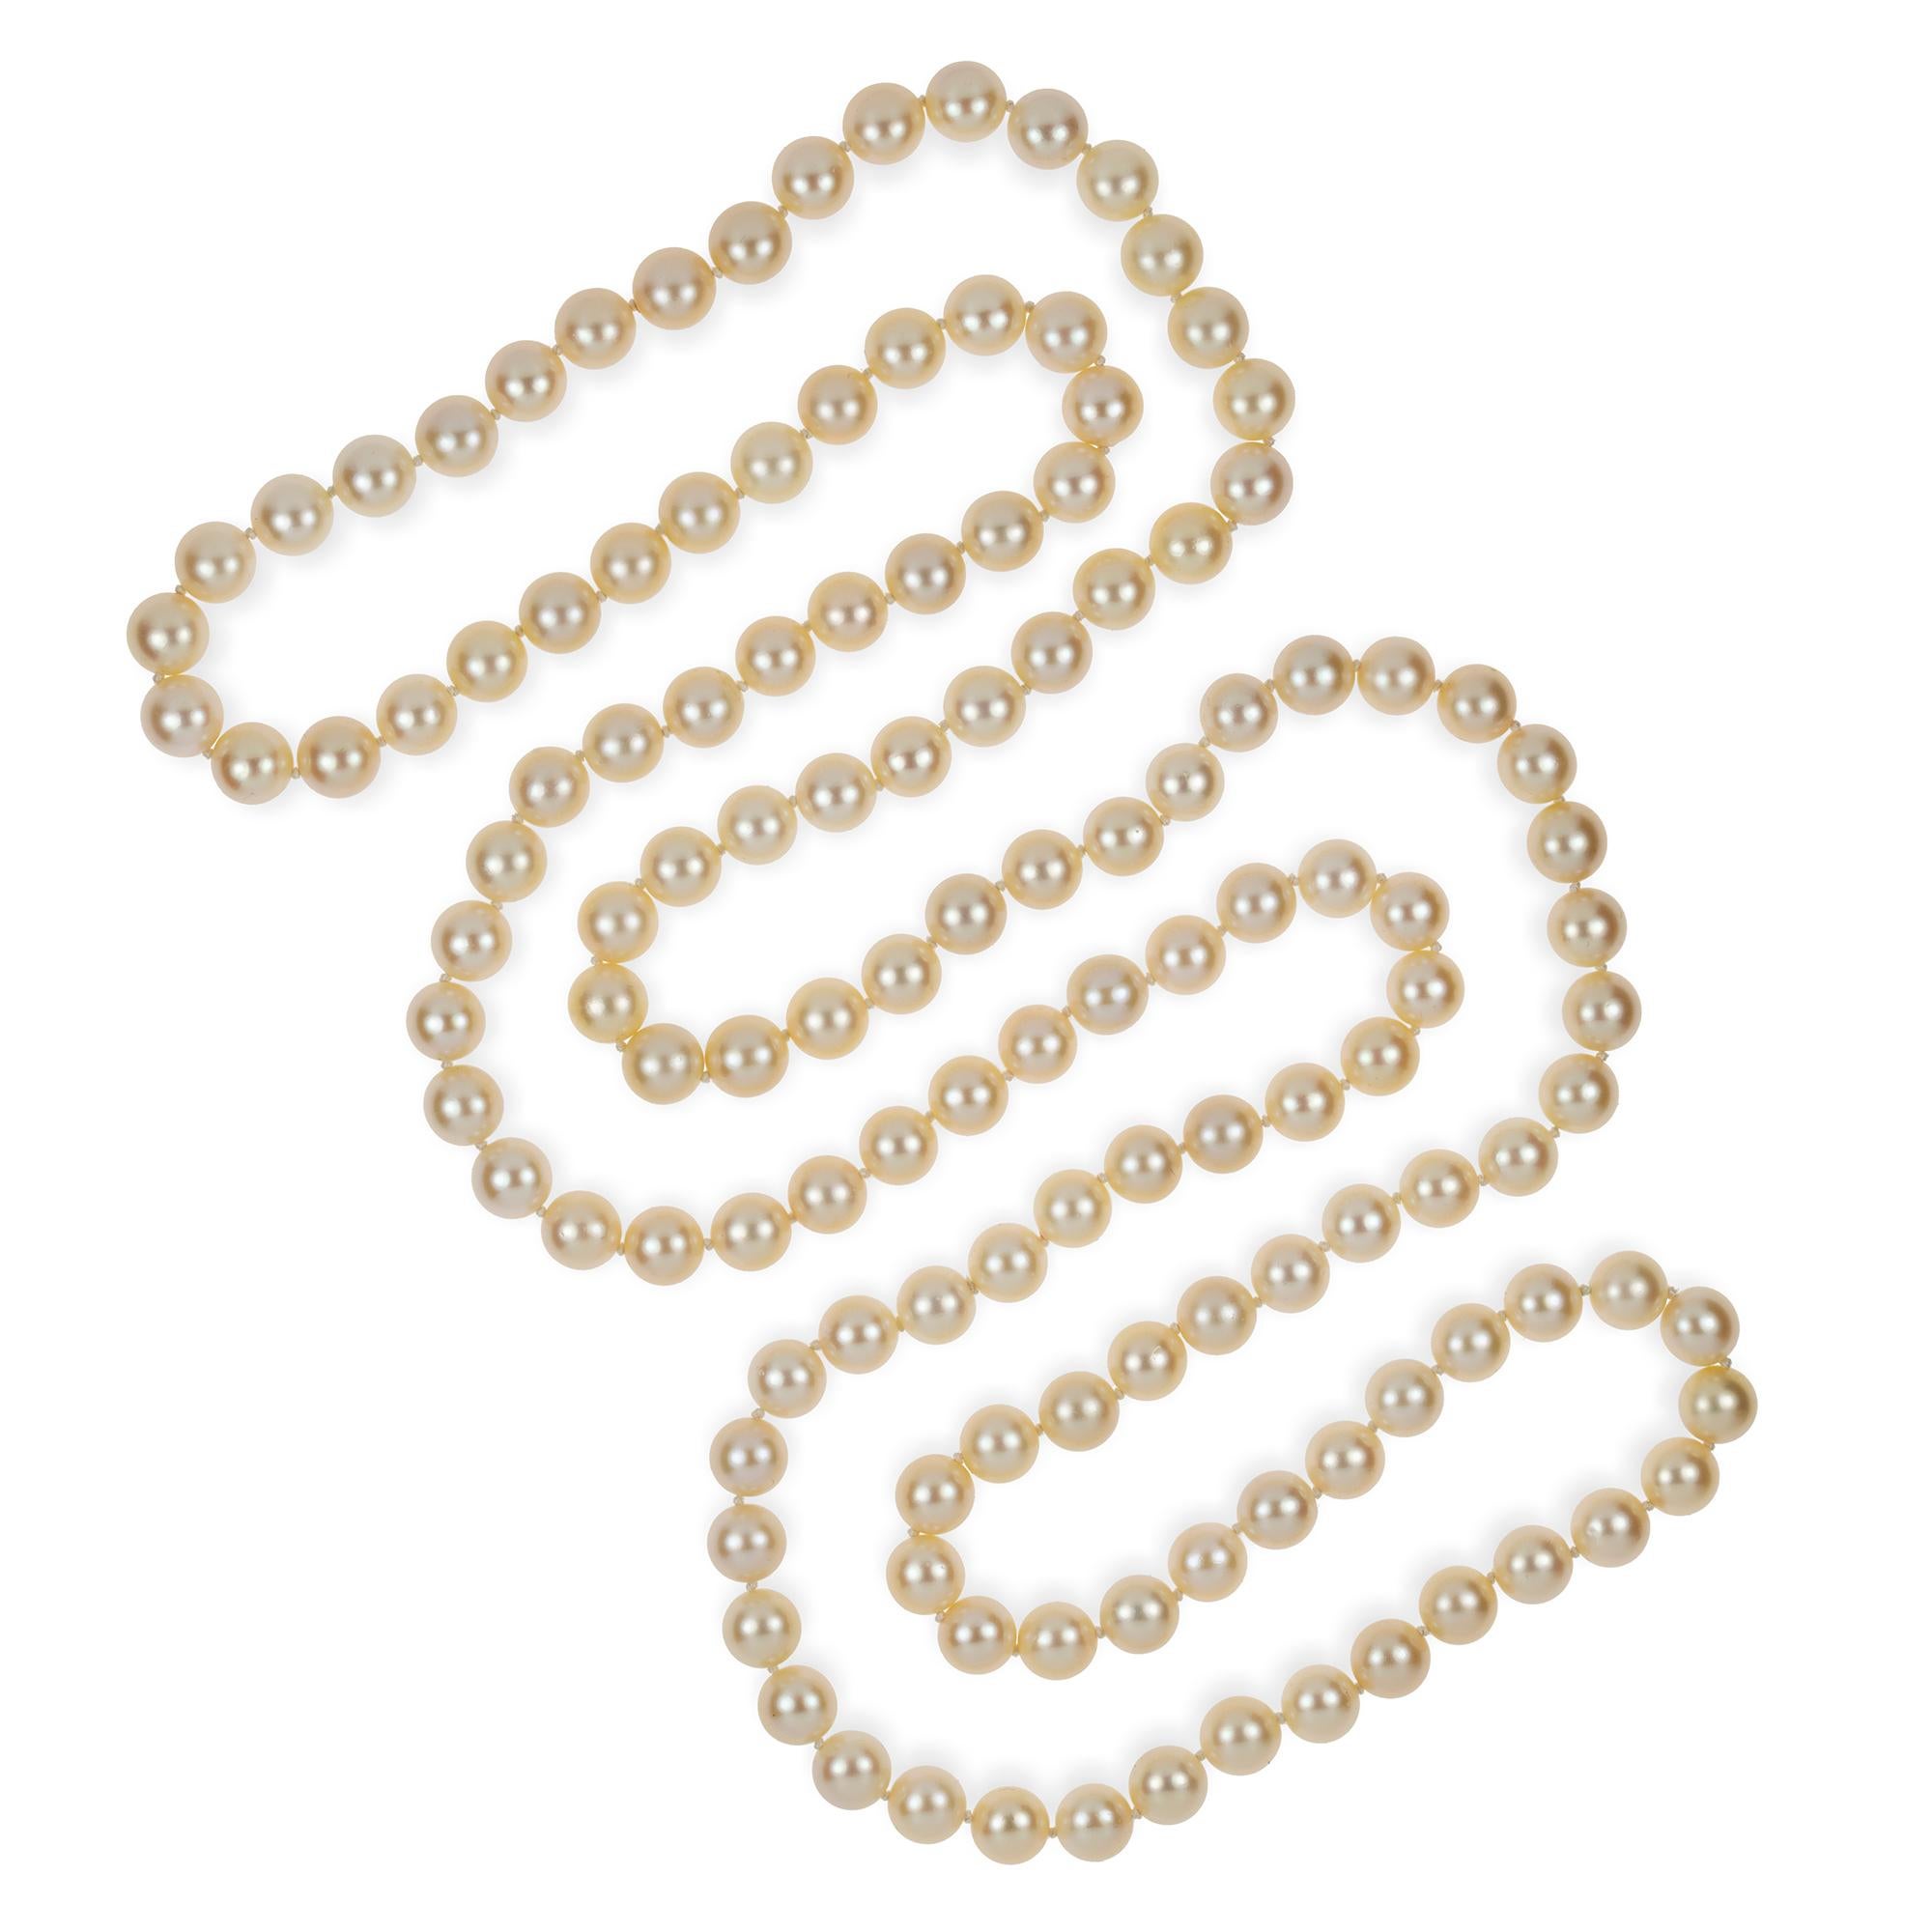 Un long collier de perles de culture, cent trente-deux perles de culture de couleur crème, d'un diamètre de 9 à 9,5 mm, enfilées et nouées, mesurant environ 132 cm de long, poids brut 14,7 grammes.

Ce collier est en très bon état.

Ce fabuleux